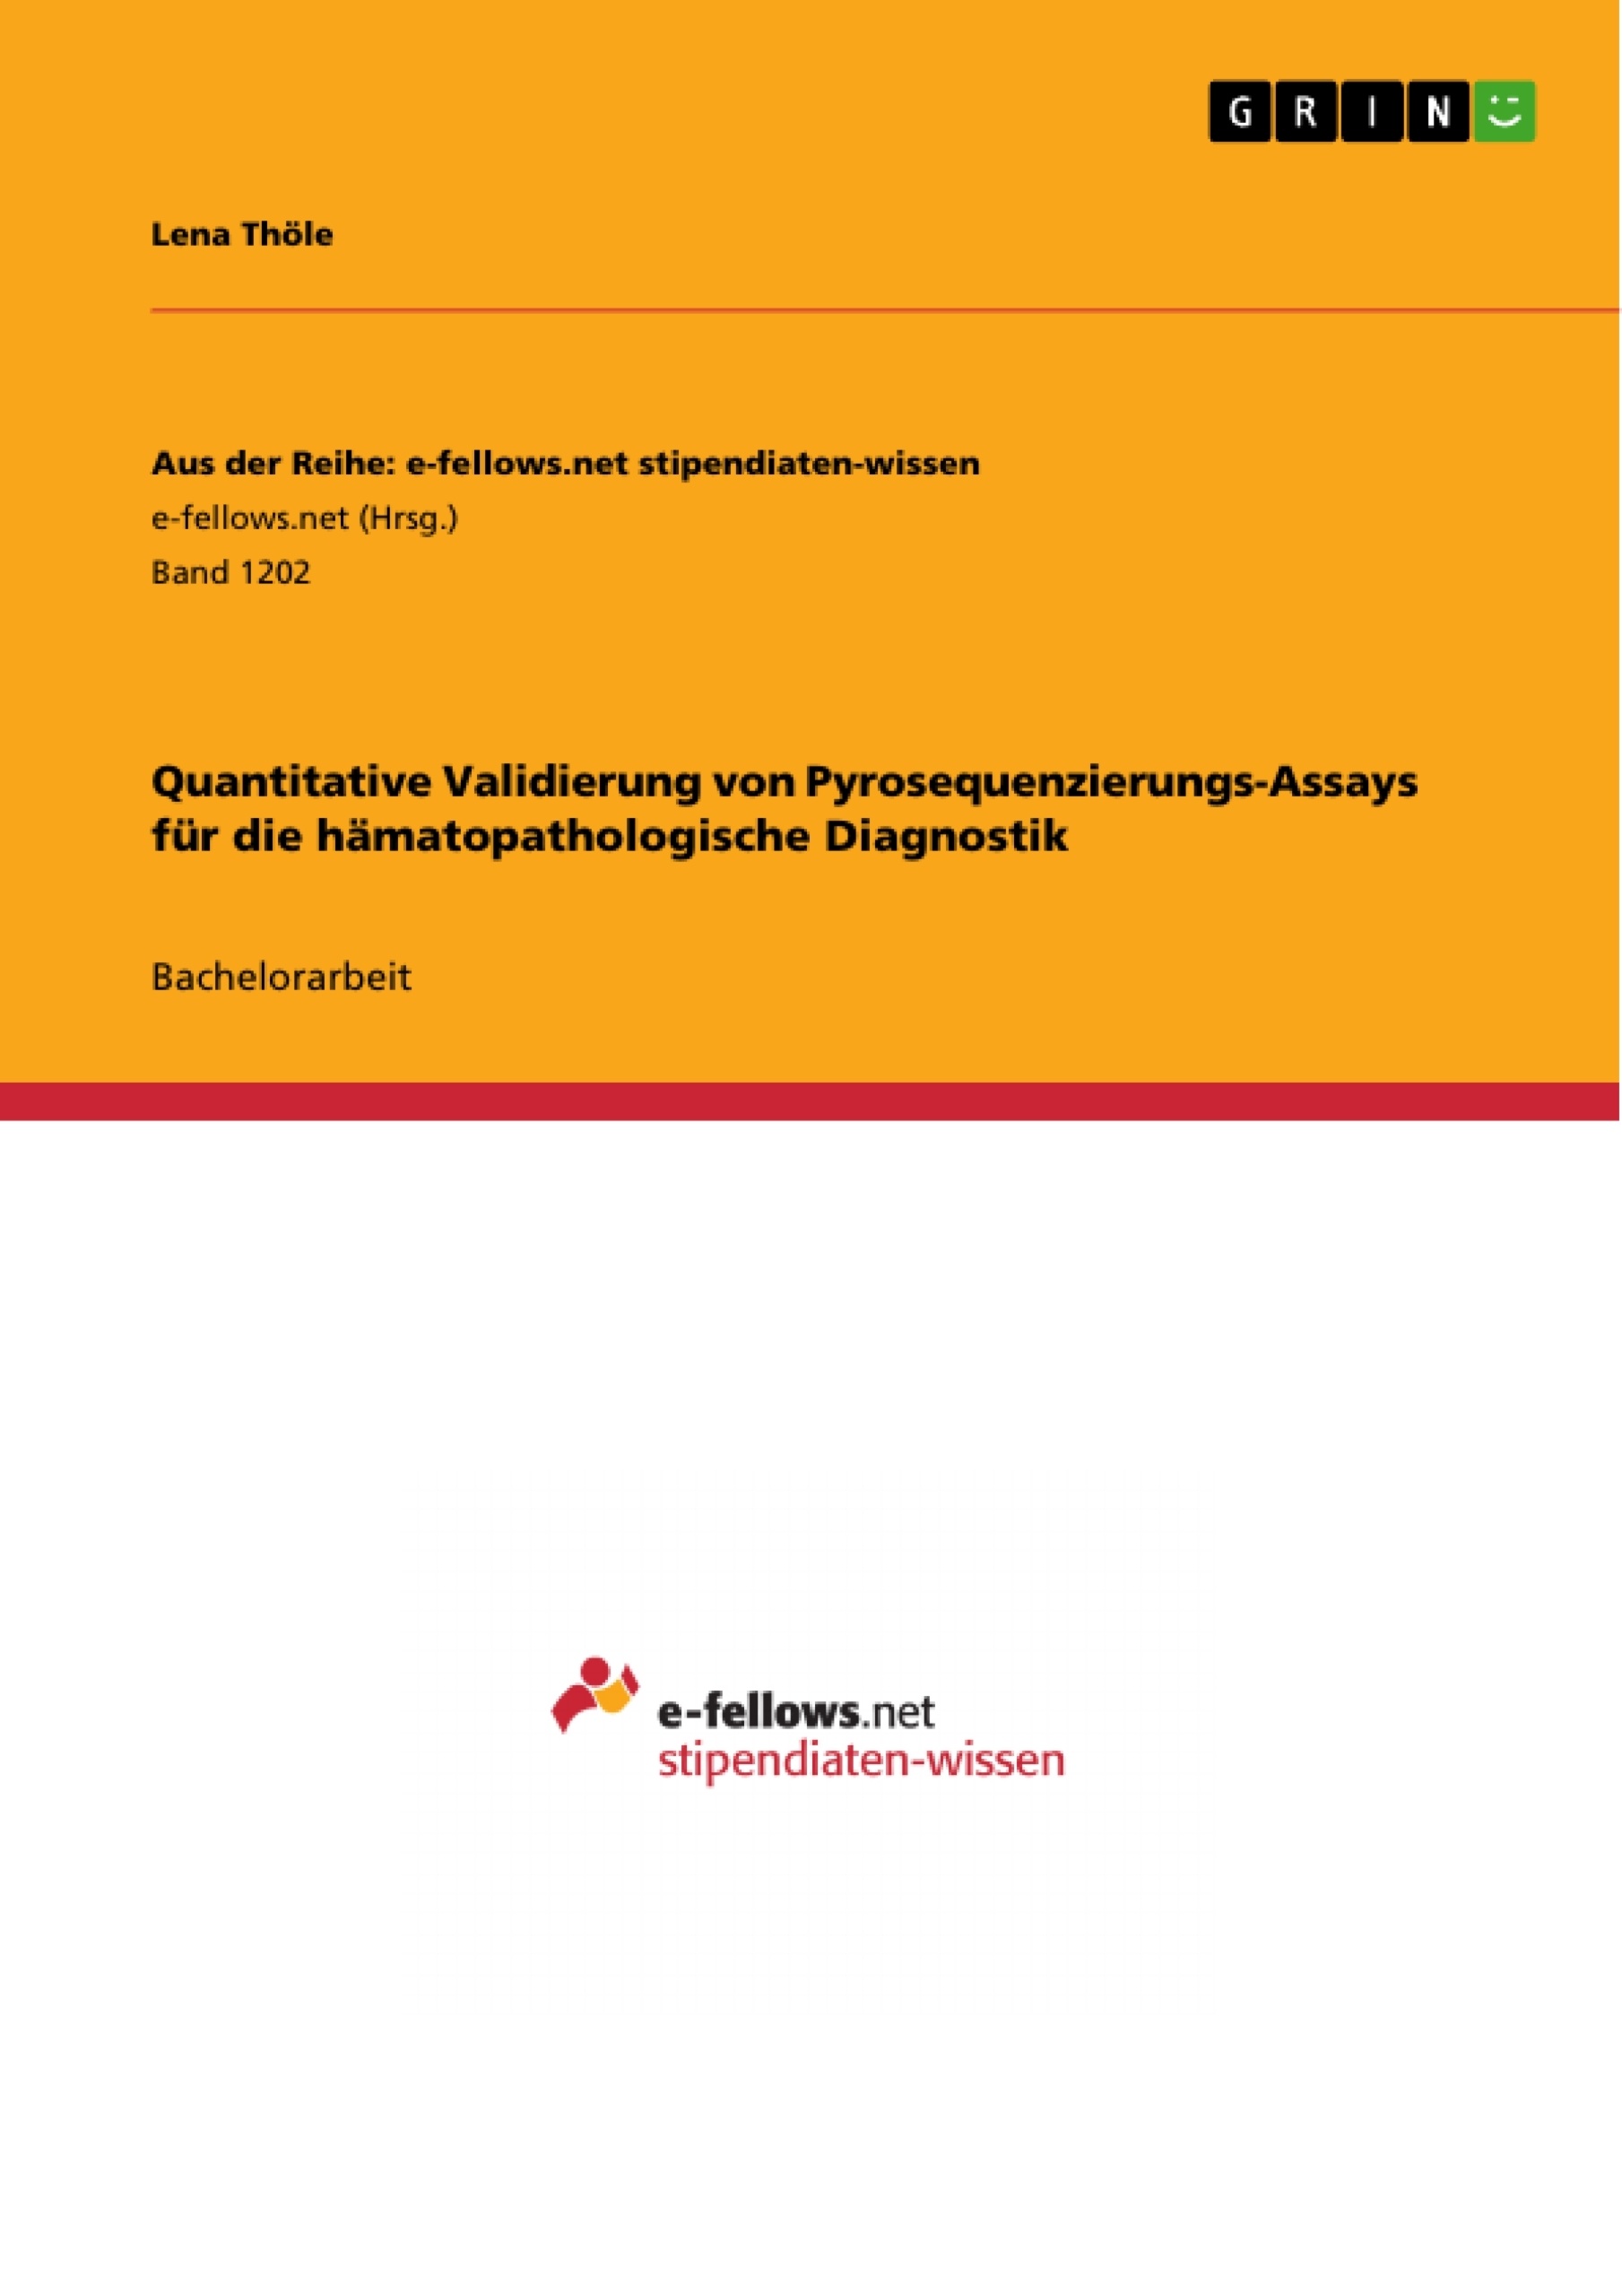 Title: Quantitative Validierung von Pyrosequenzierungs-Assays für die hämatopathologische Diagnostik